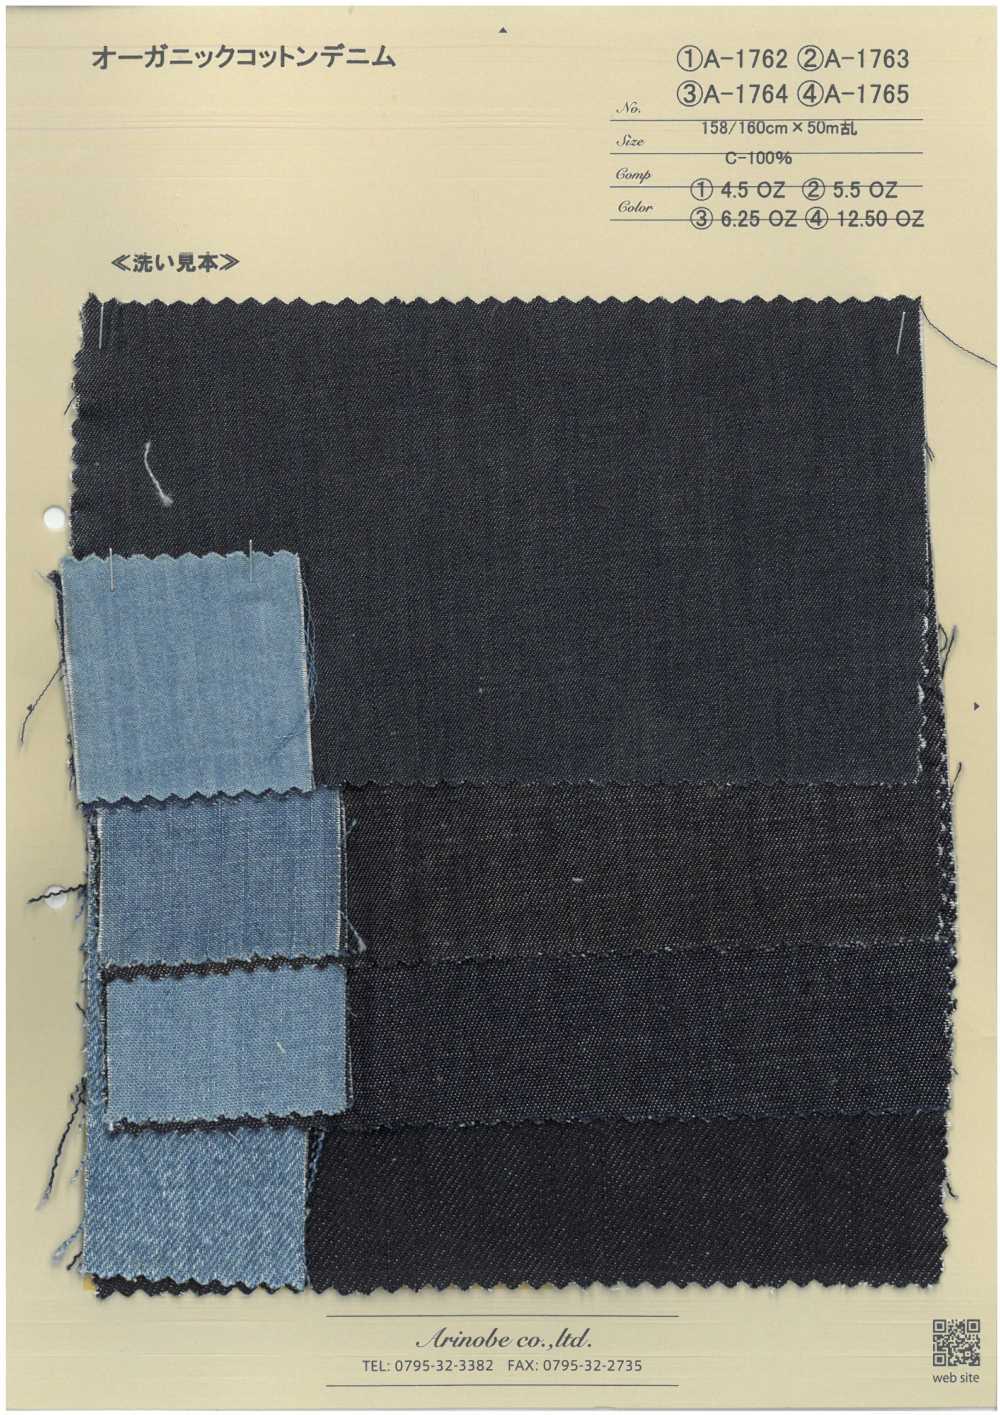 A-1764 Jeans De Algodão Orgânico[Têxtil / Tecido] ARINOBE CO., LTD.